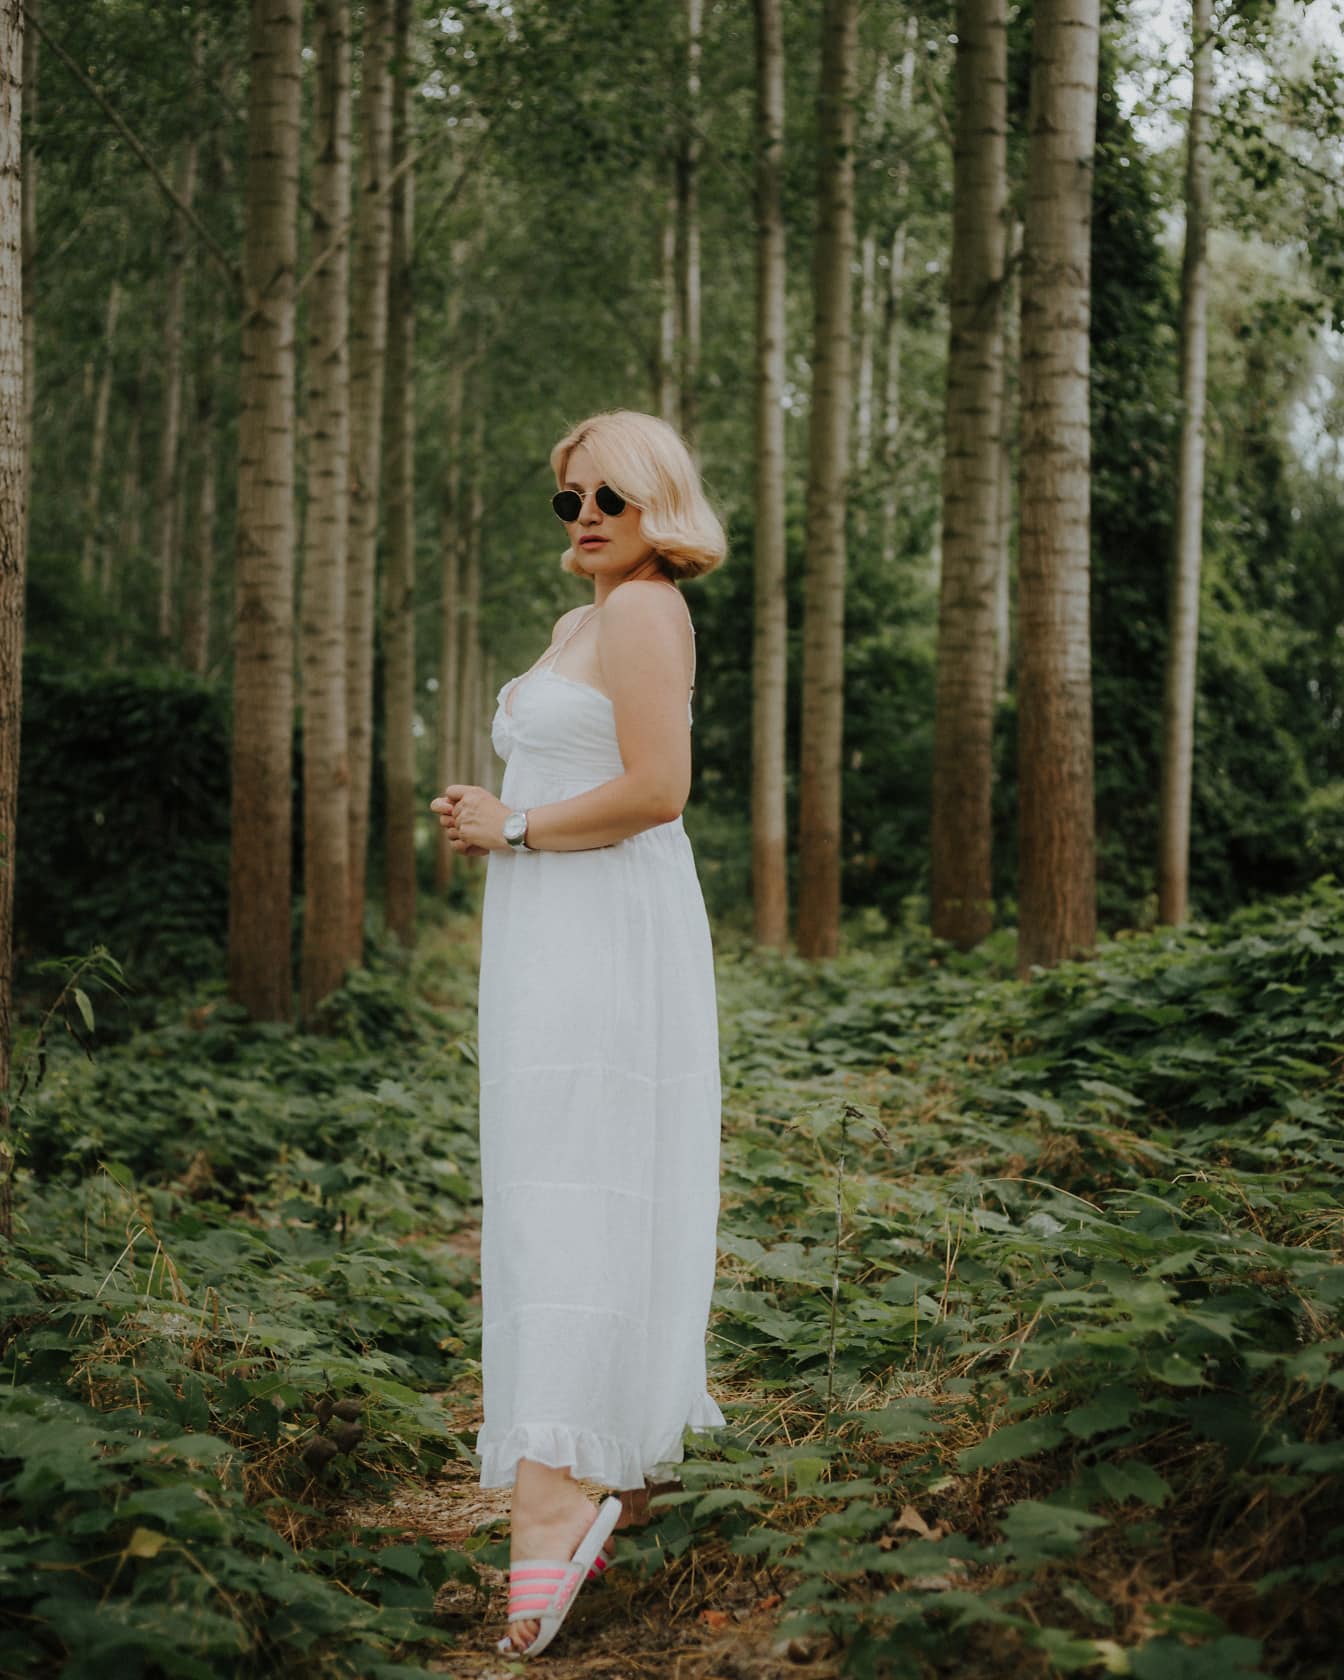 Чудова блондинка в білій сукні в зеленому лісі